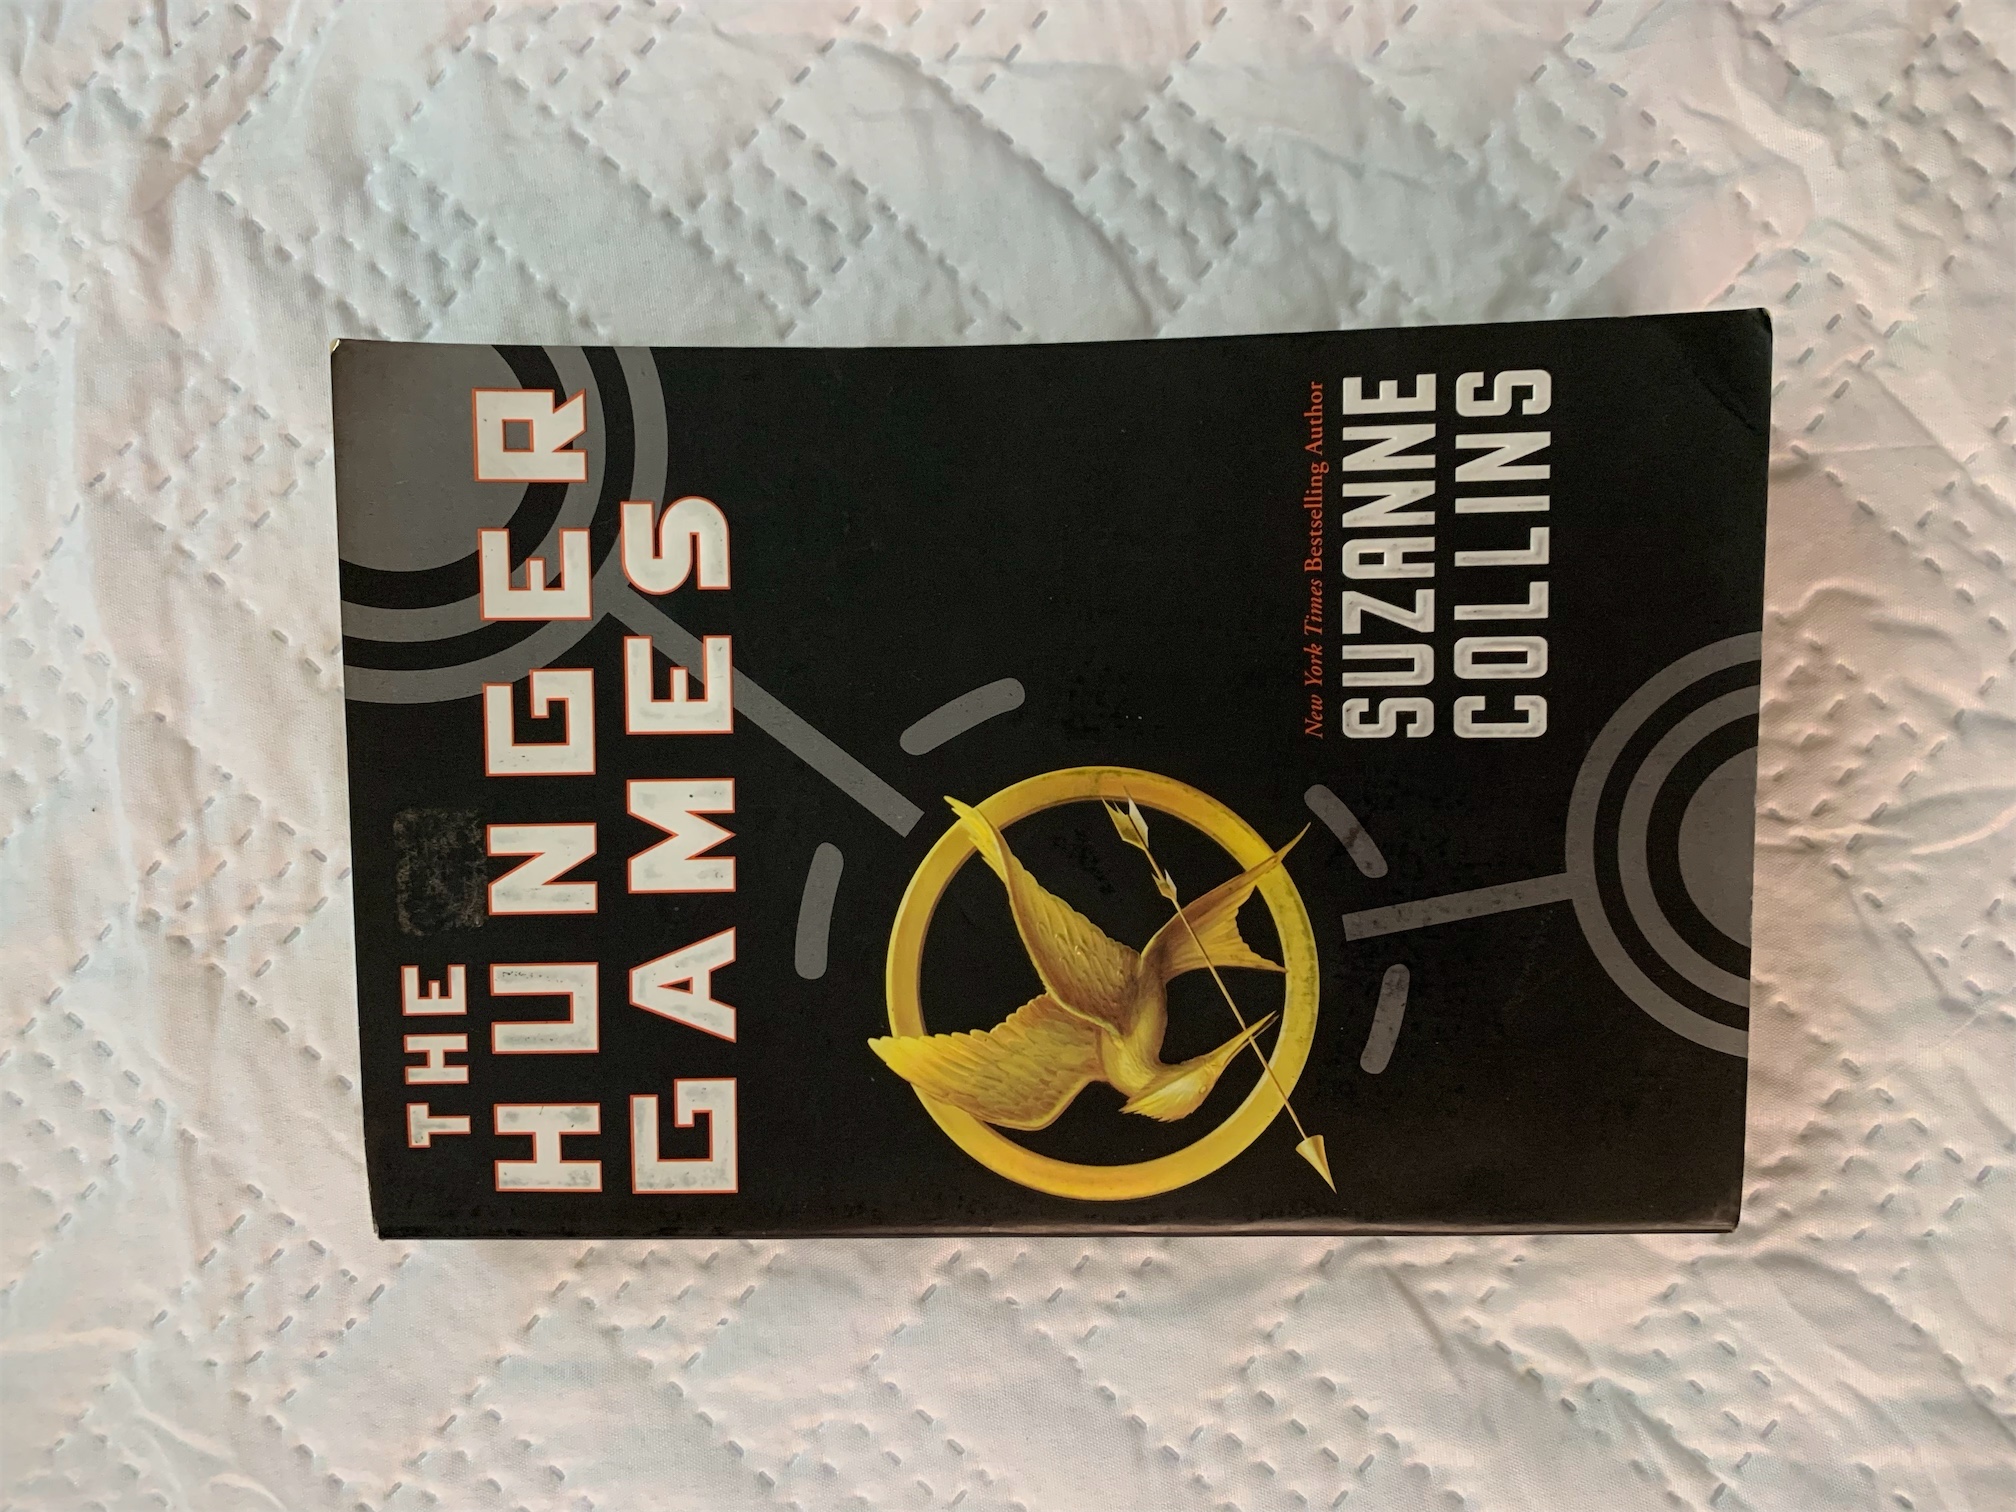 libros y revistas - The Hunger Games